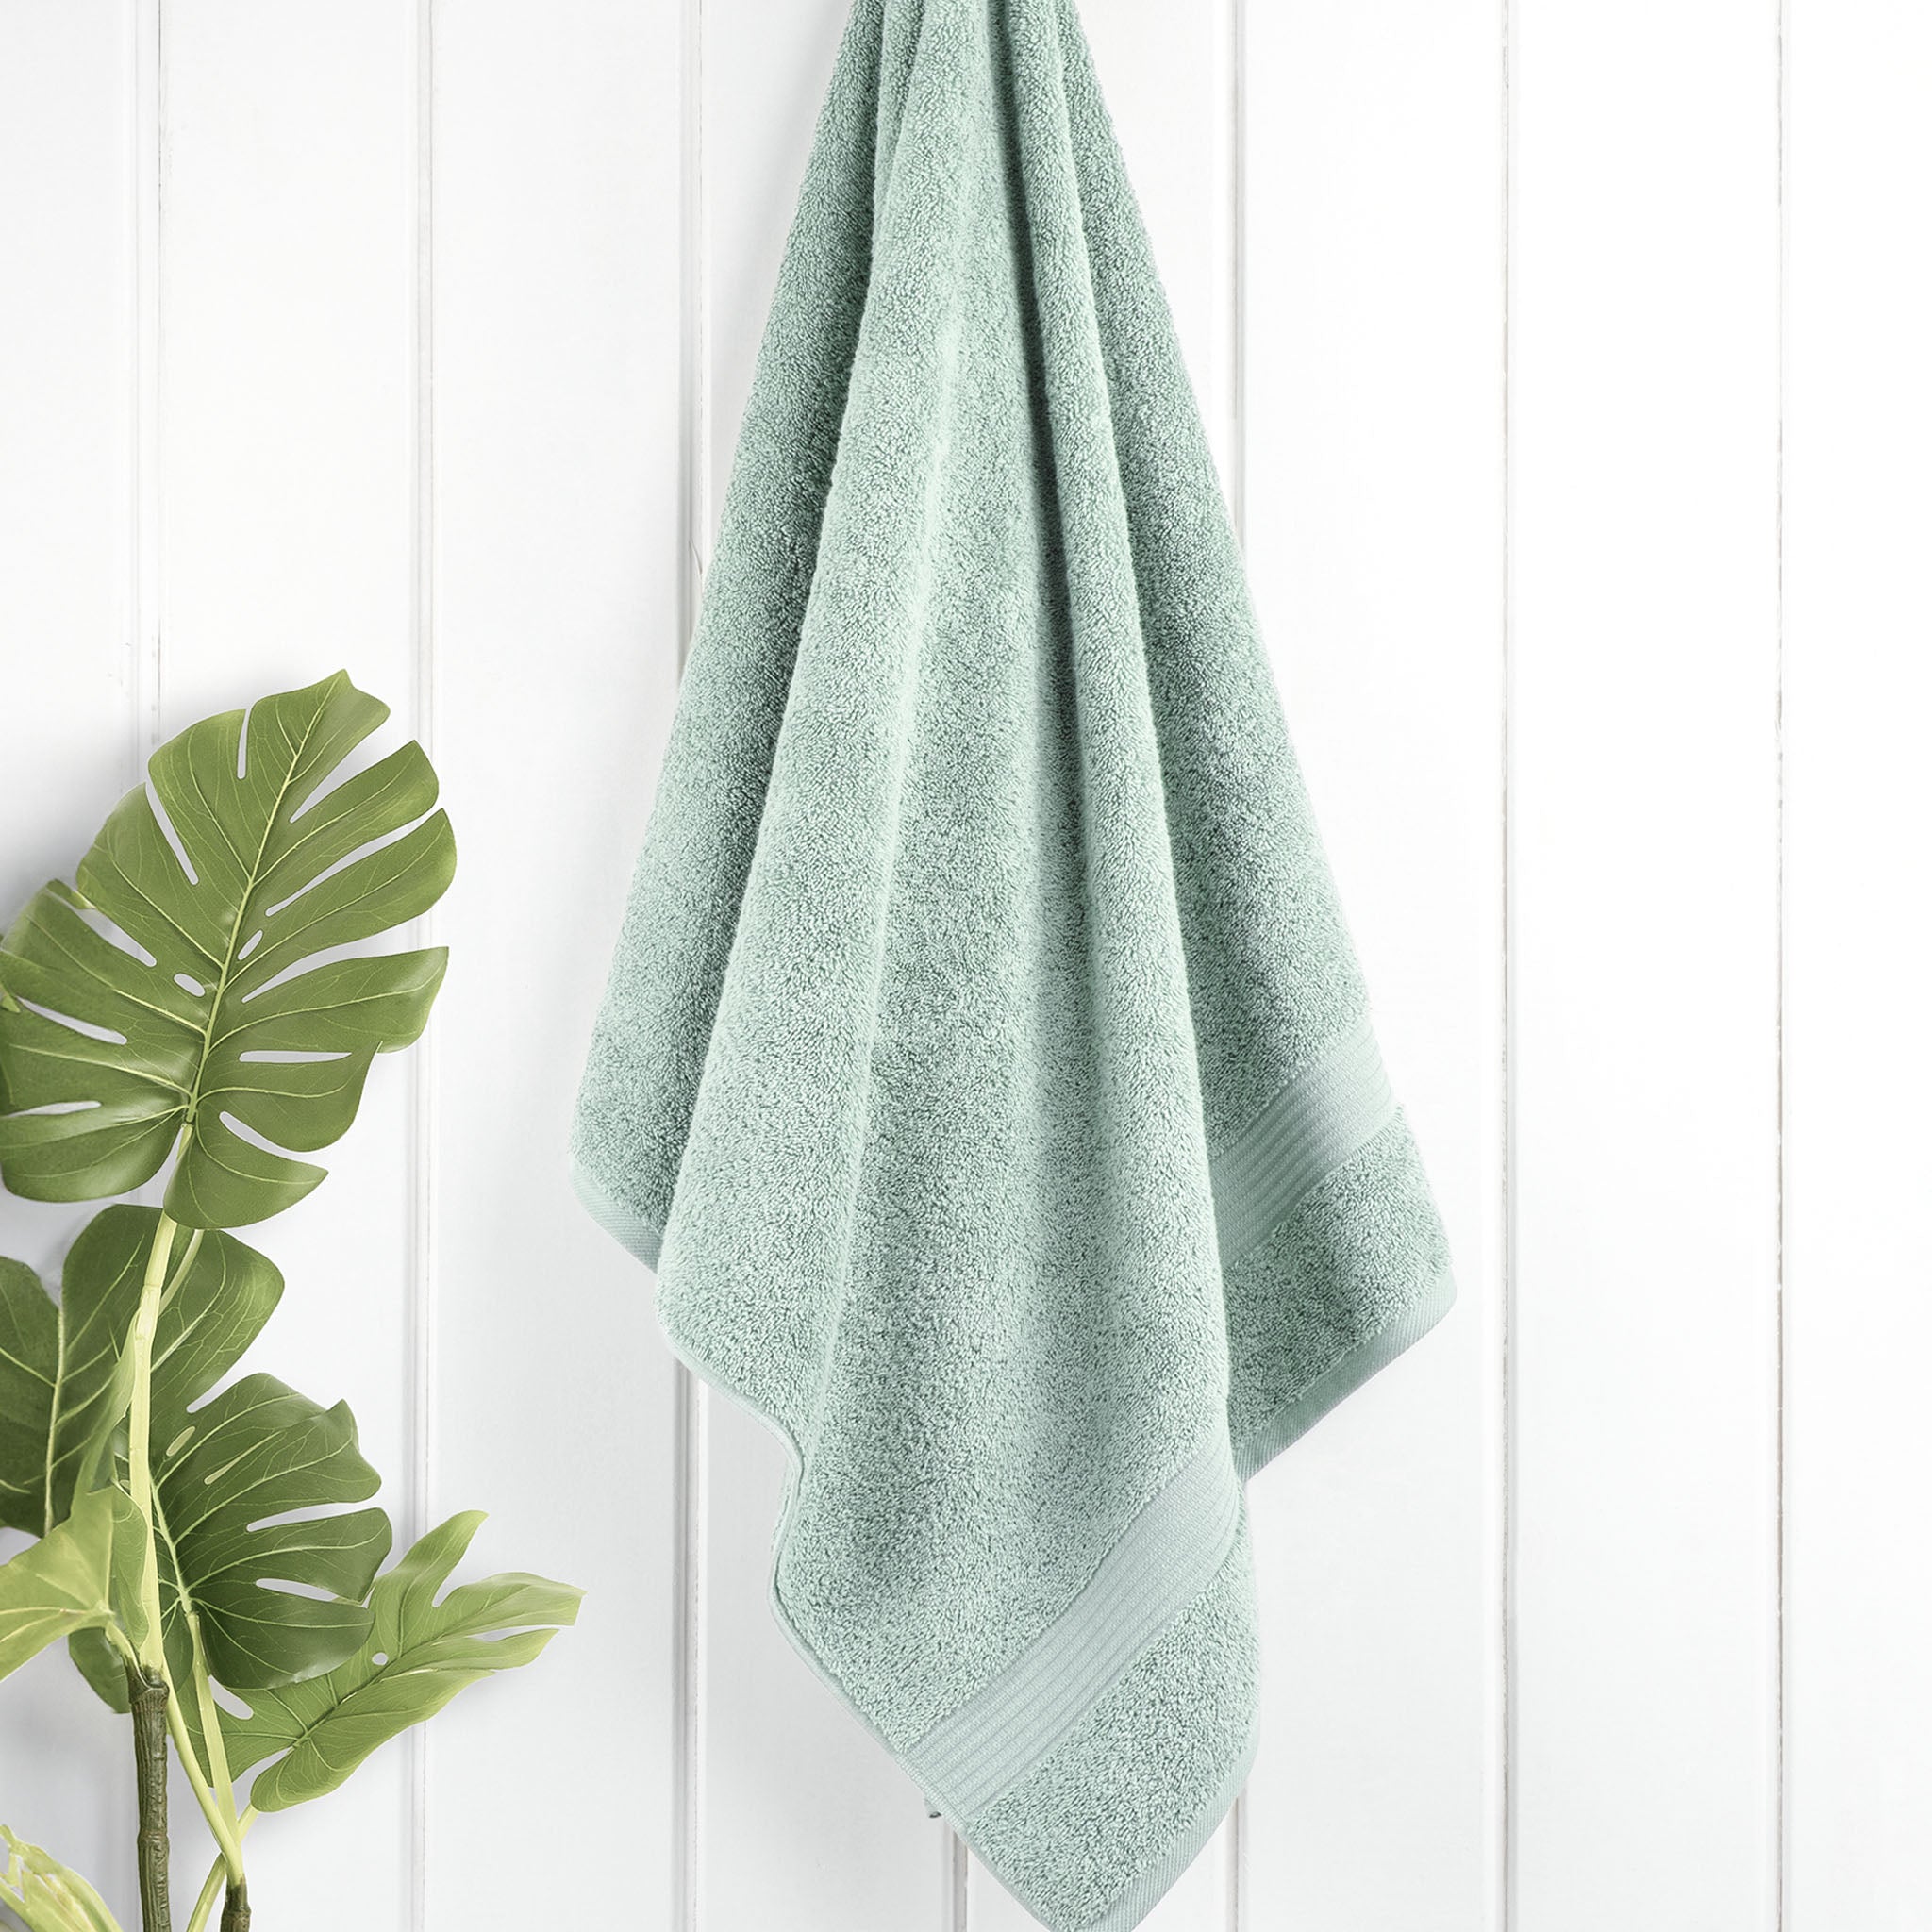 American Soft Linen Bekos 100% Cotton Turkish Towels, 4 Piece Bath Towel Set -mint-02